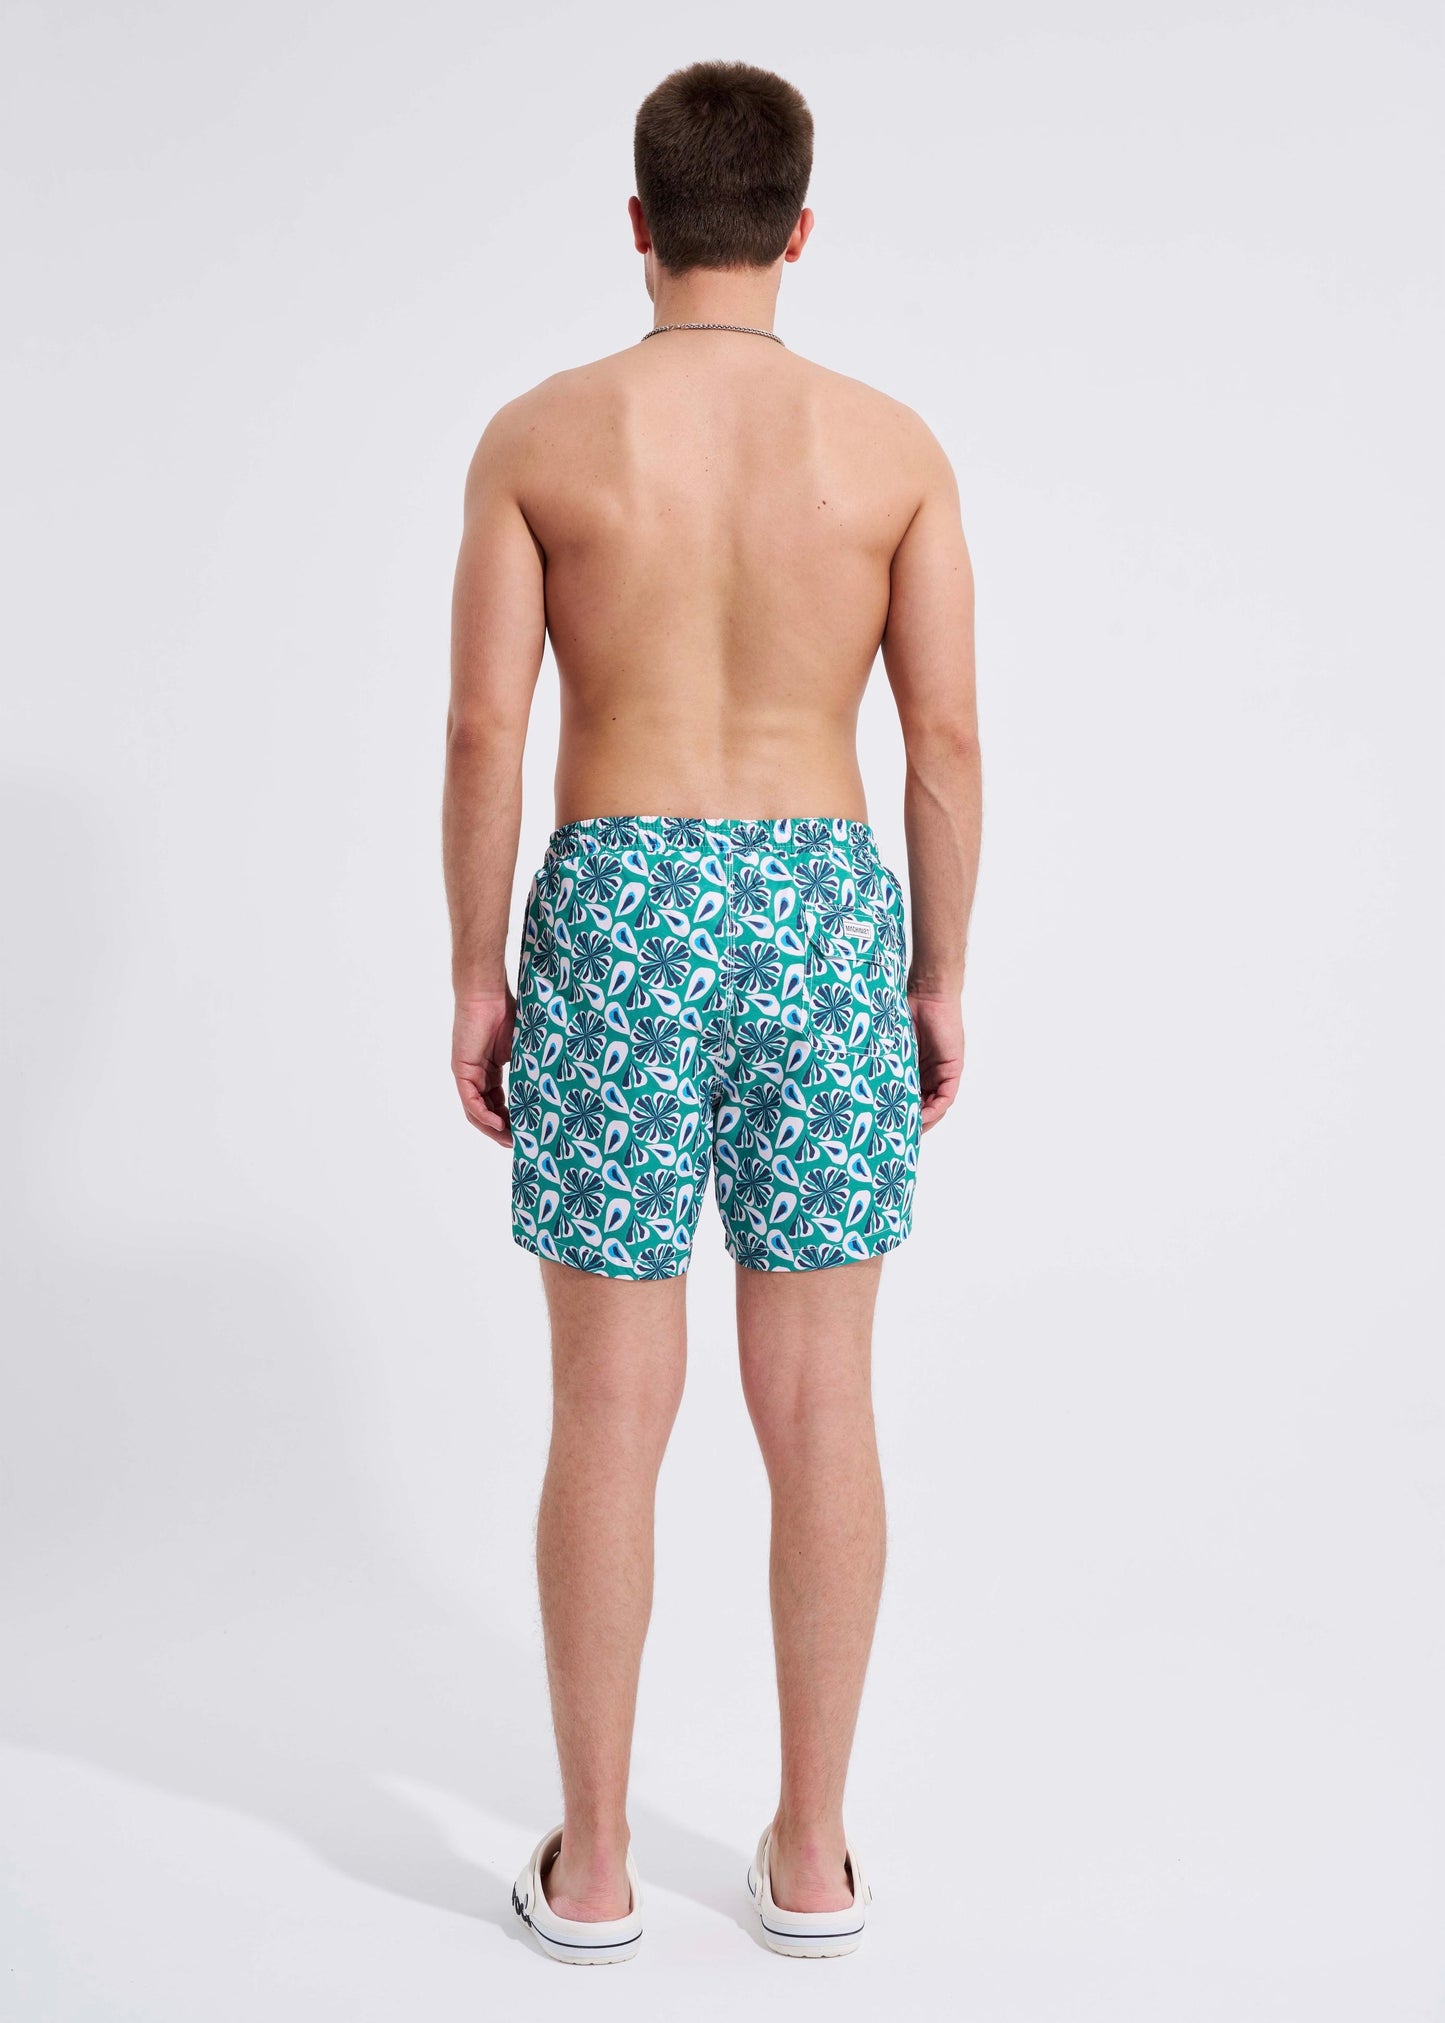 Machinist Swimwear Short